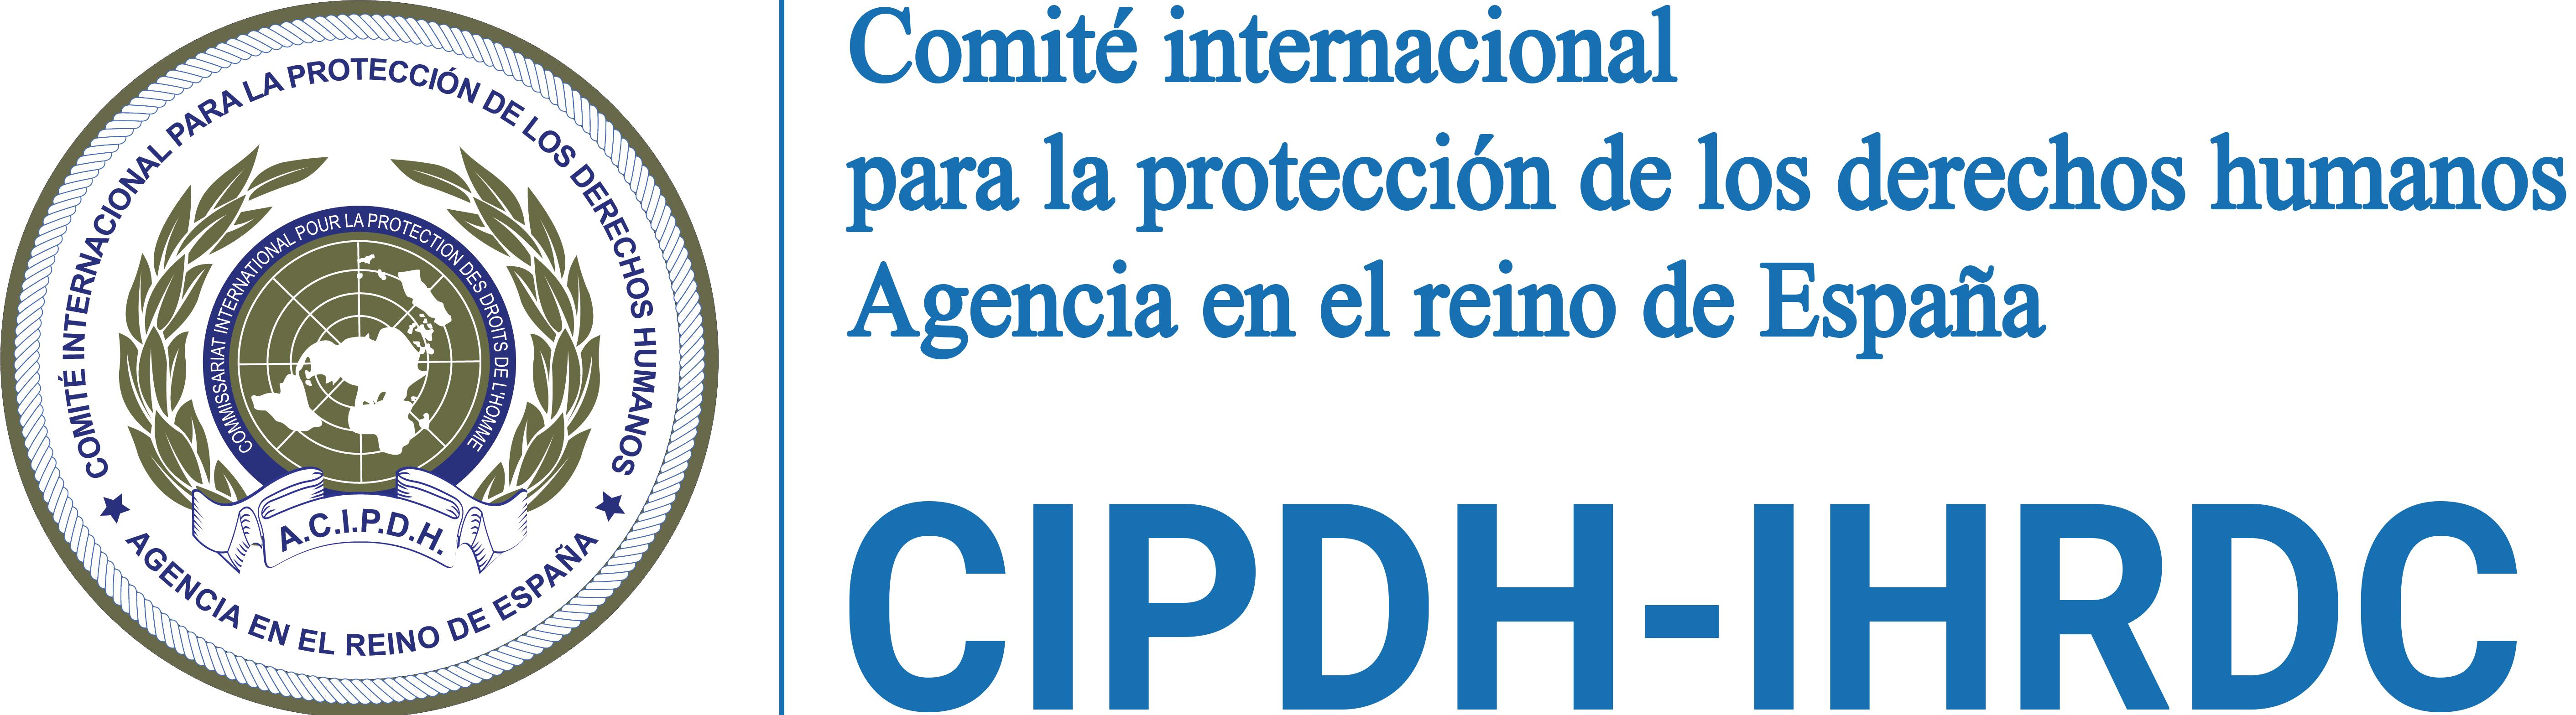 Comité internacional para la protección de los derechos humanos